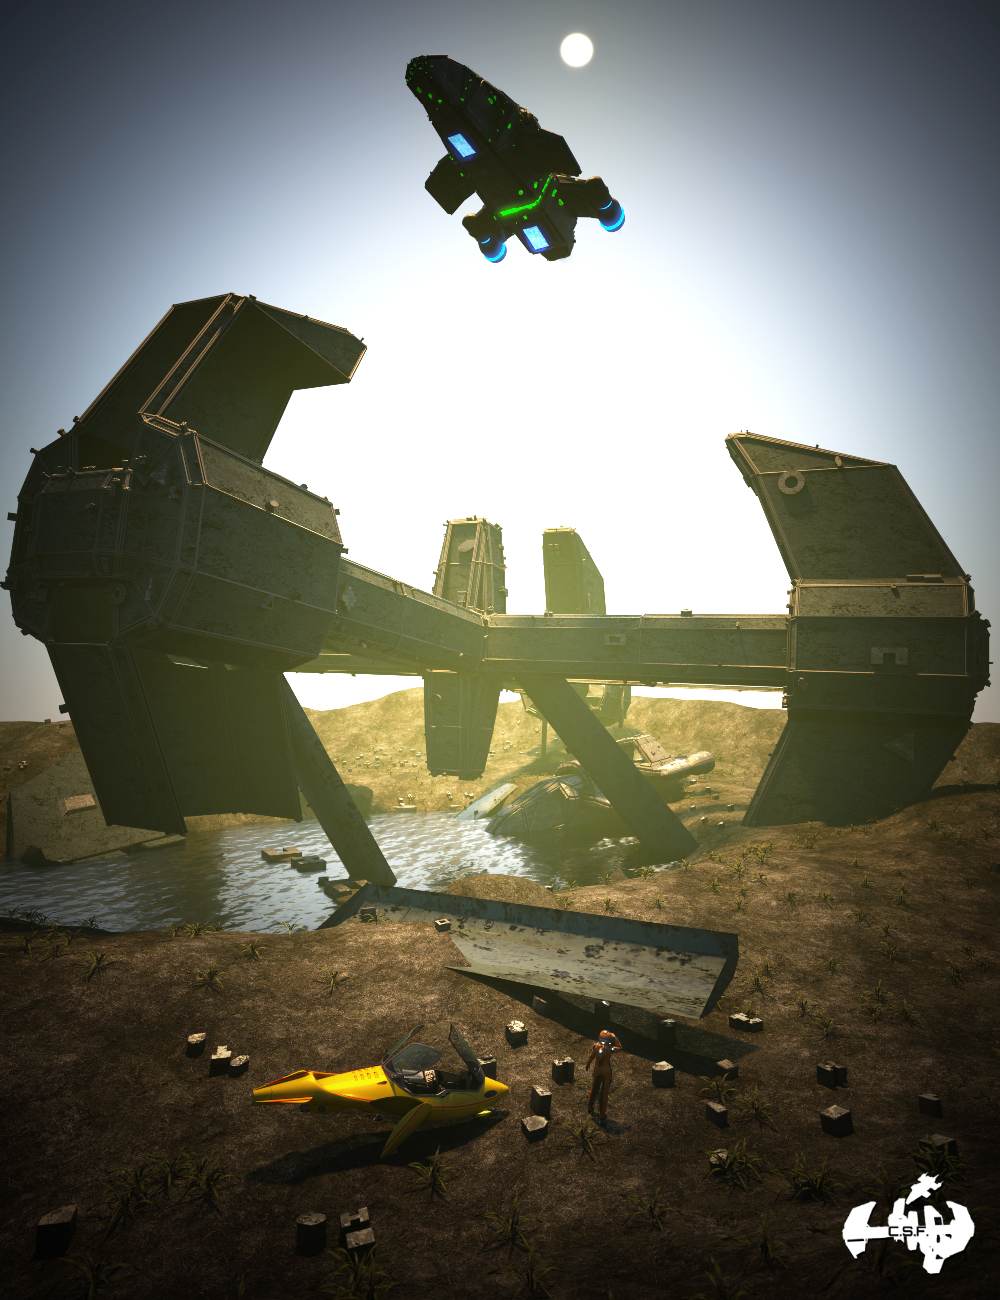 Cargo Ship Fallen by: Gendragon3DJeffersonAF, 3D Models by Daz 3D